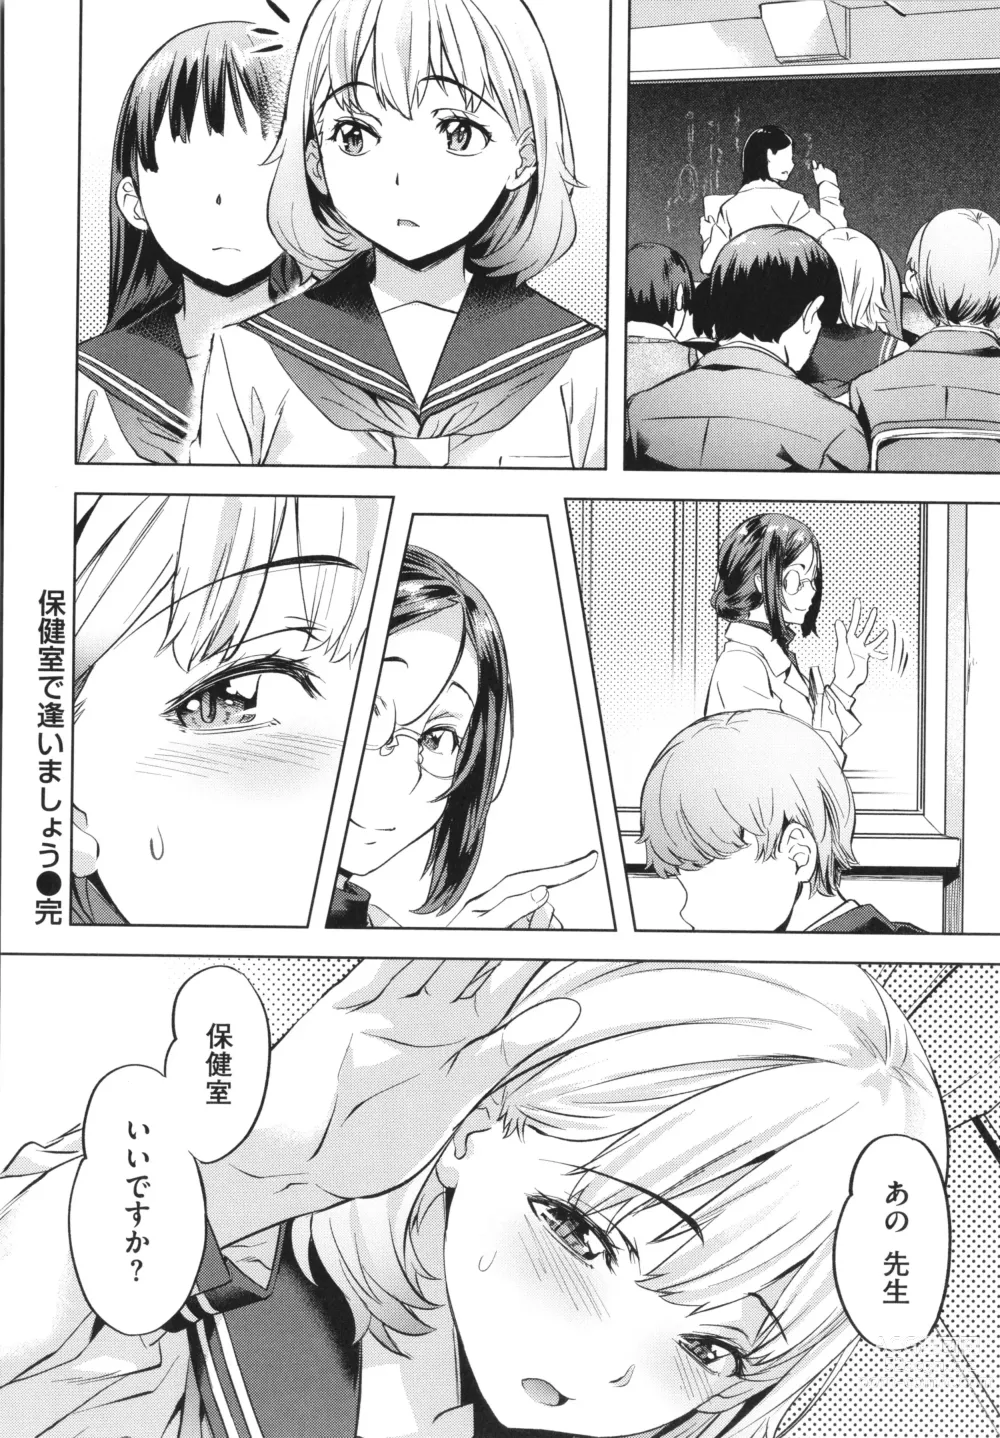 Page 192 of manga Binetsu Emotion - Sensual Emotion